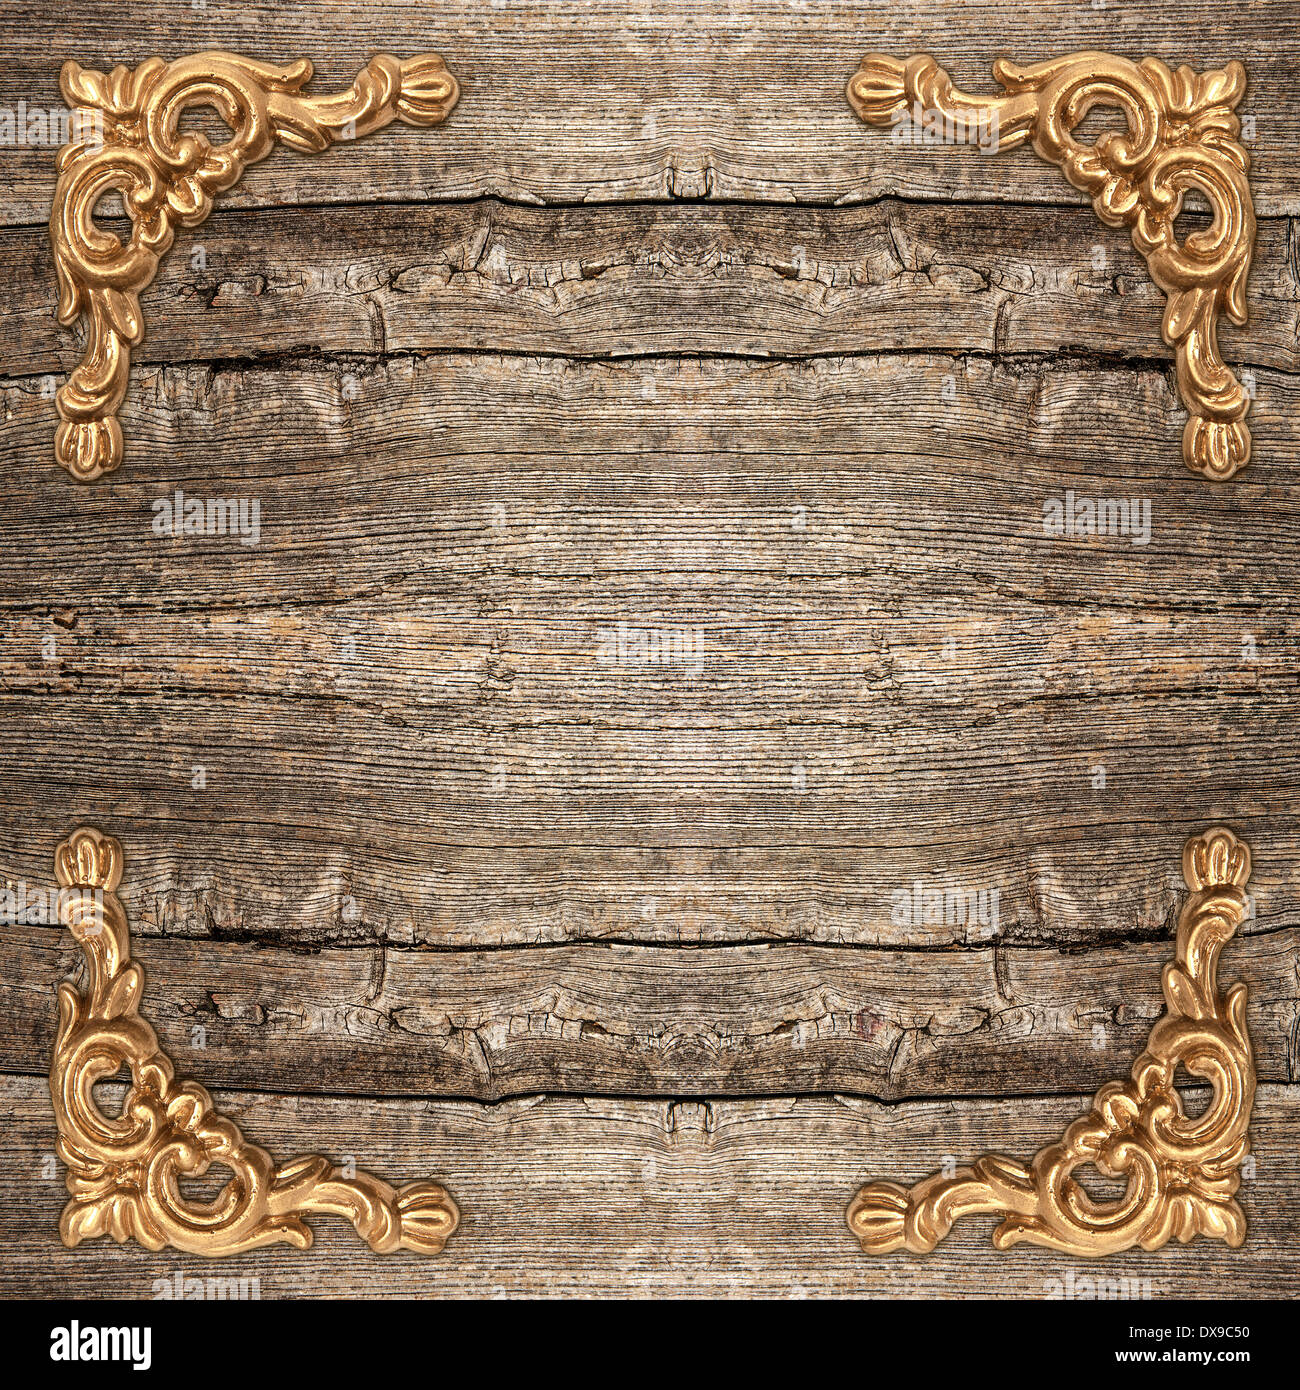 Fondo de madera rústica con marco dorado vintage de esquina. Foto de stock